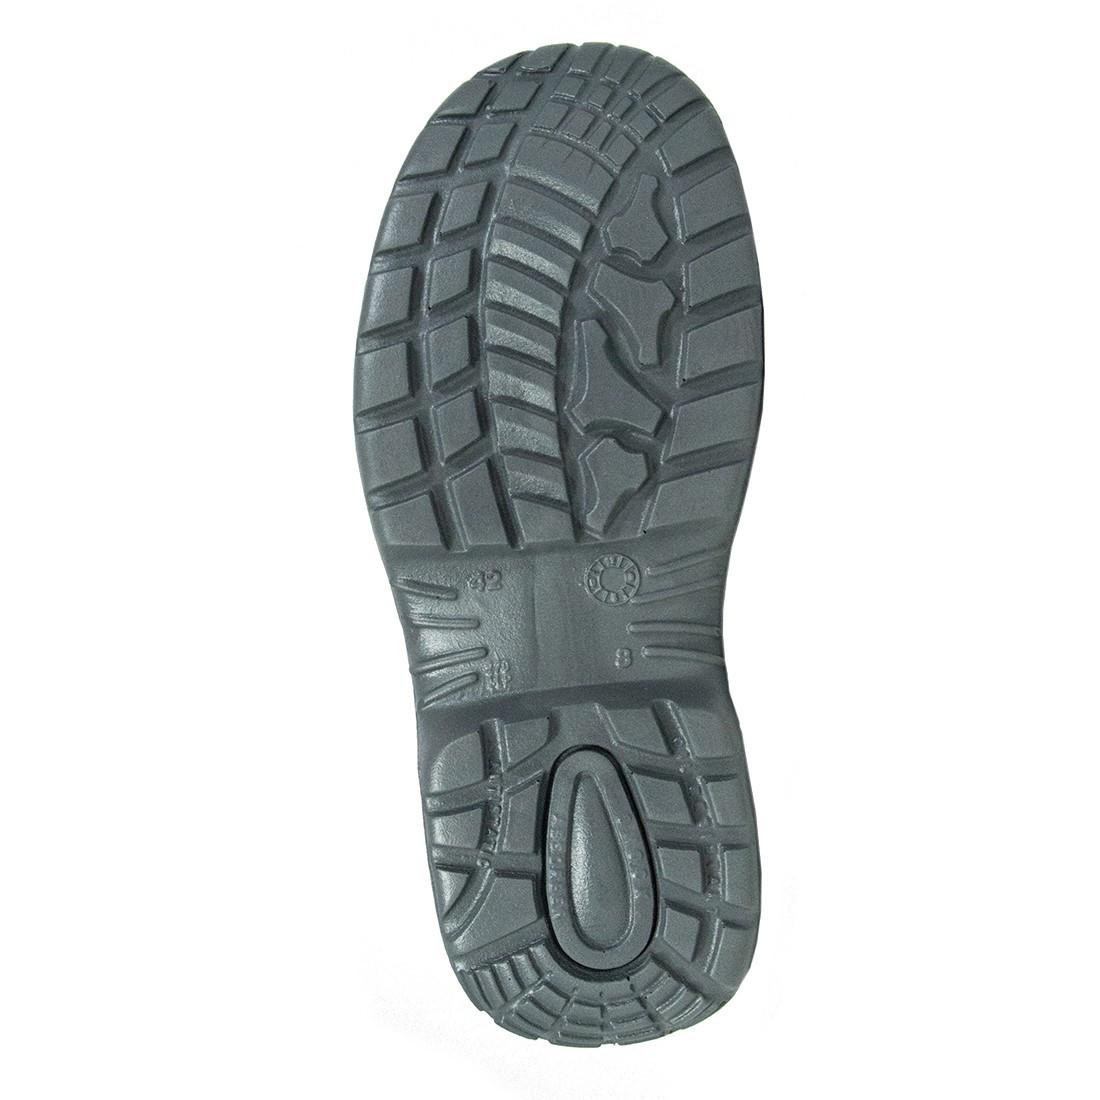 Pantofi Colosseum S1P SRC - Incaltaminte de protectie | Bocanci, Pantofi, Sandale, Cizme